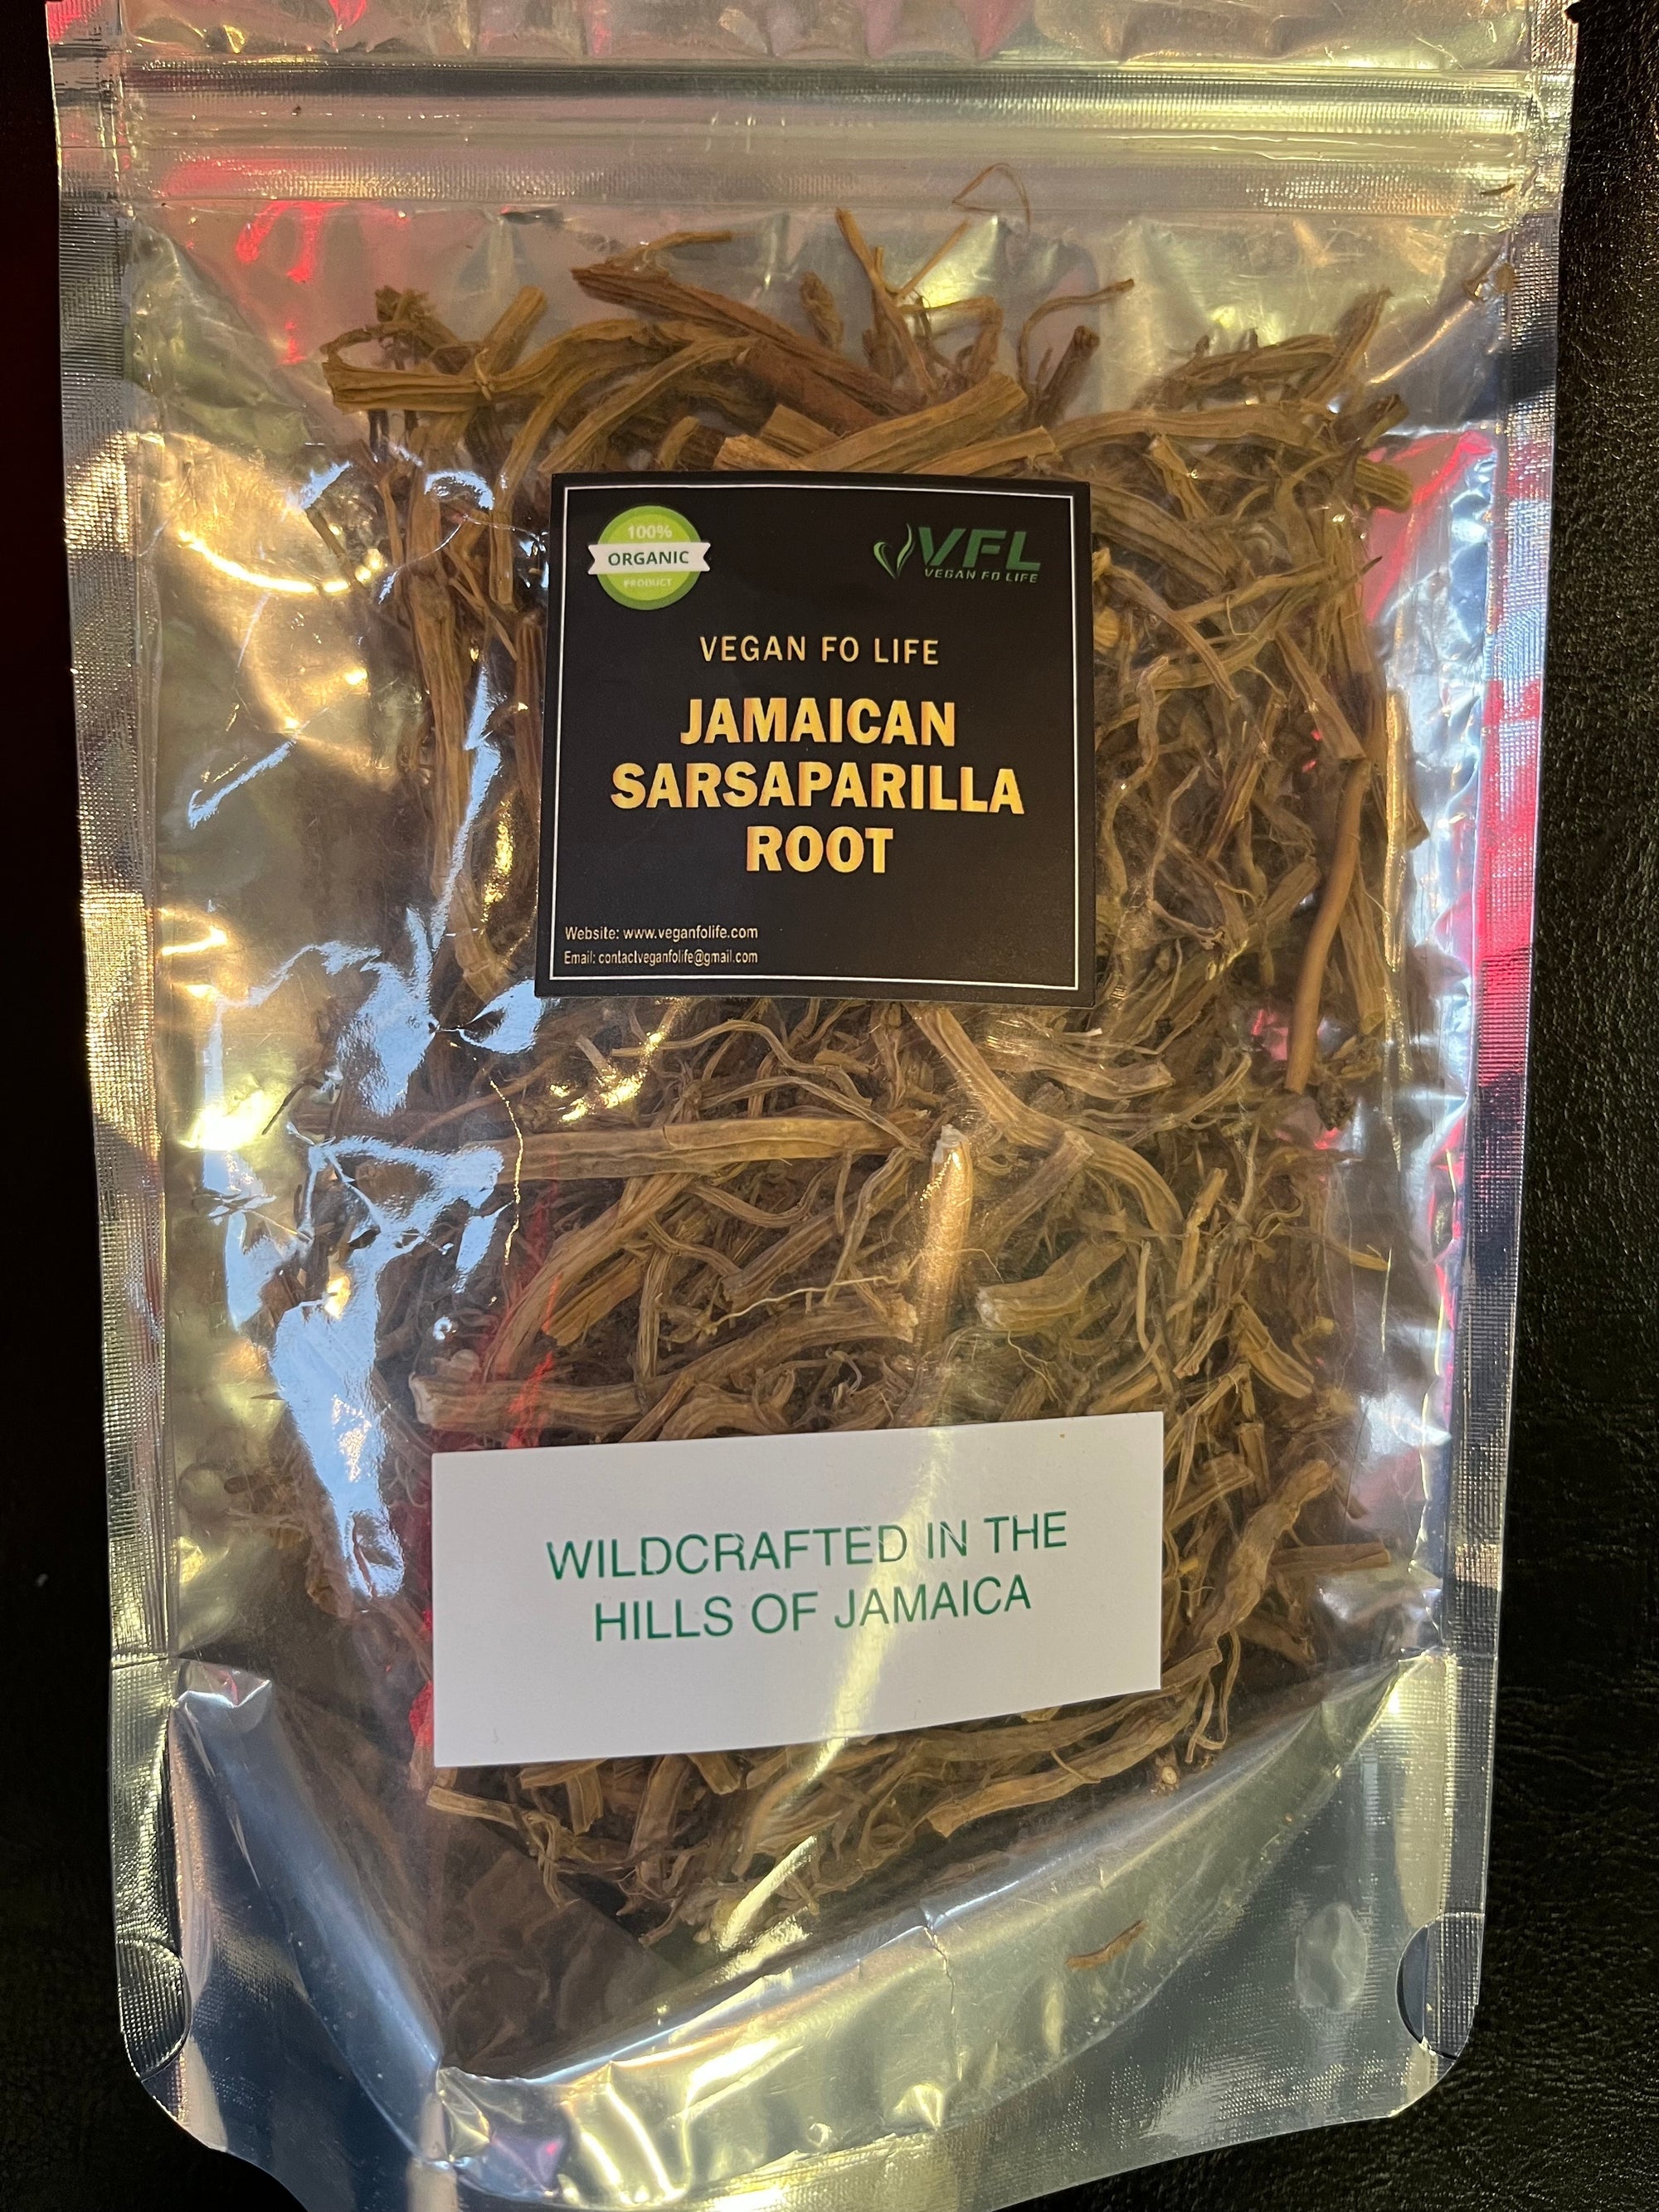 Sarsaparilla Root from Jamaica